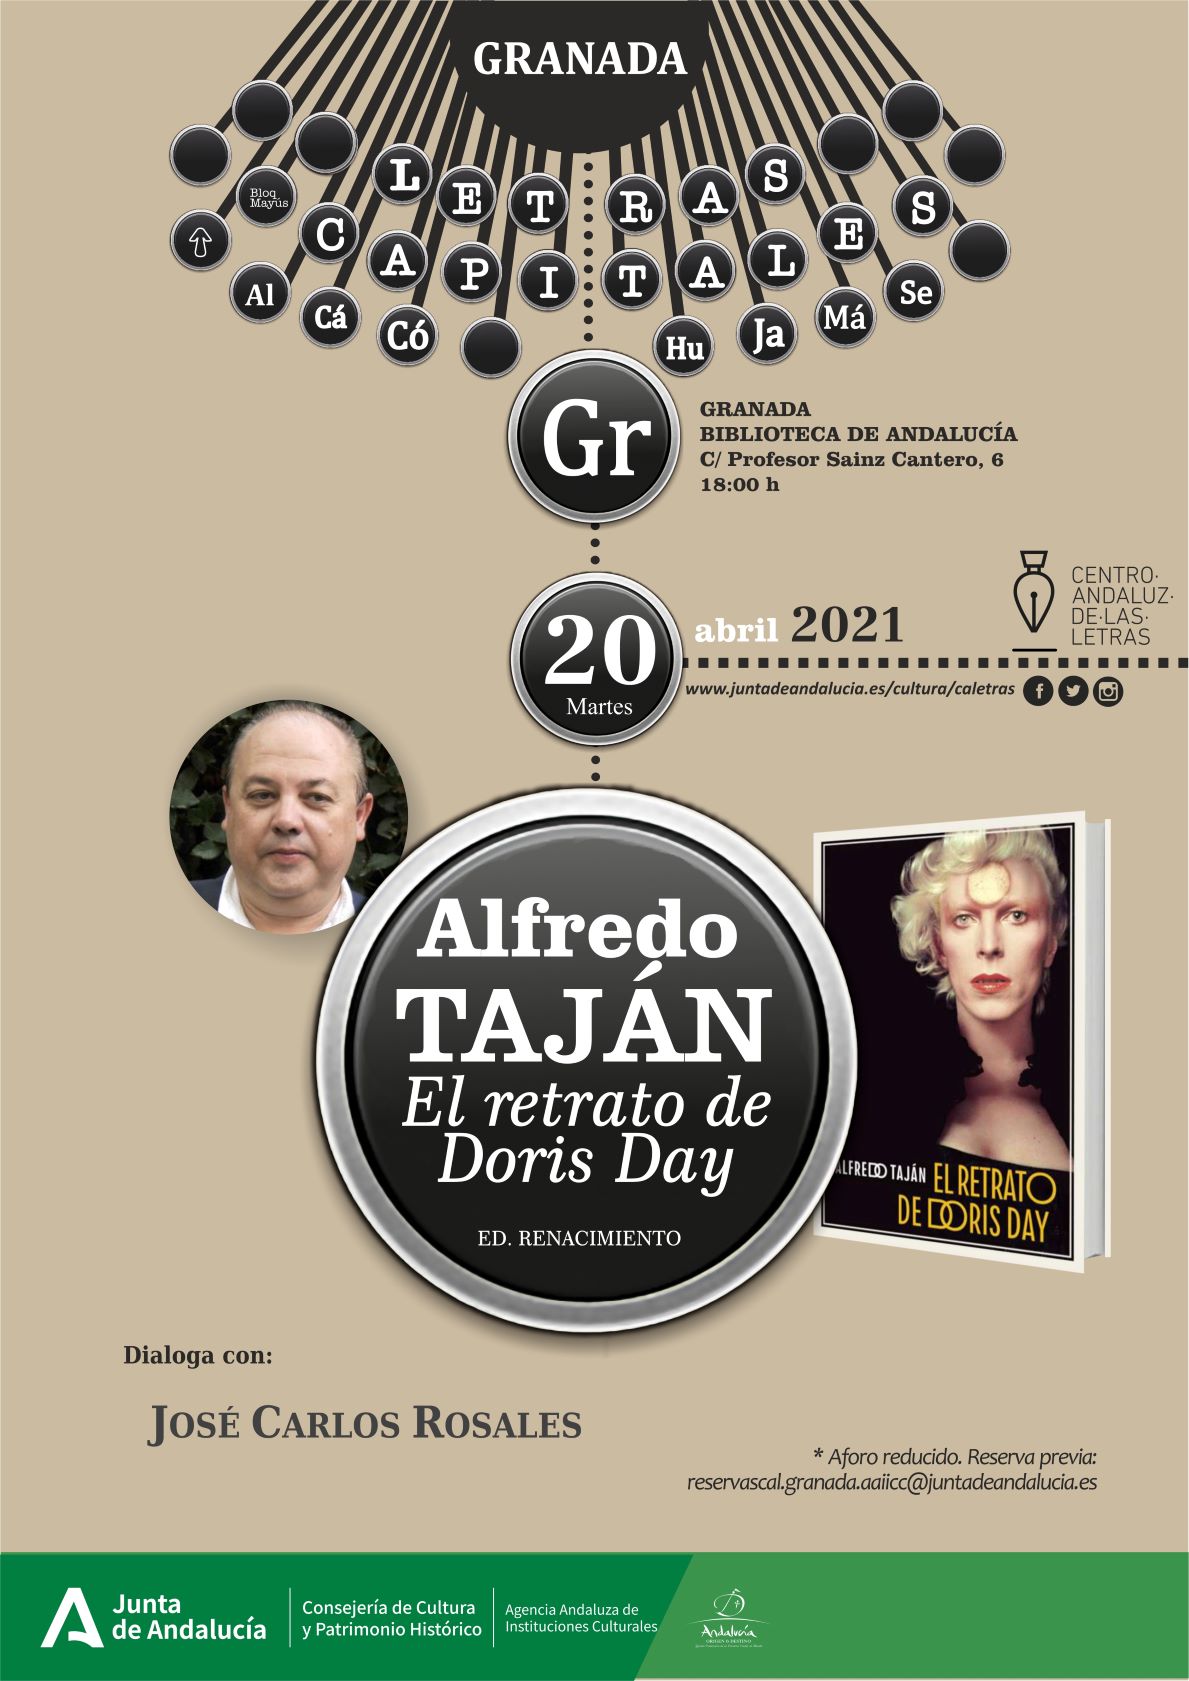  ‘El retrato de Doris Day’, de Alfredo Taján, se presentará mañana en la Biblioteca de Andalucía